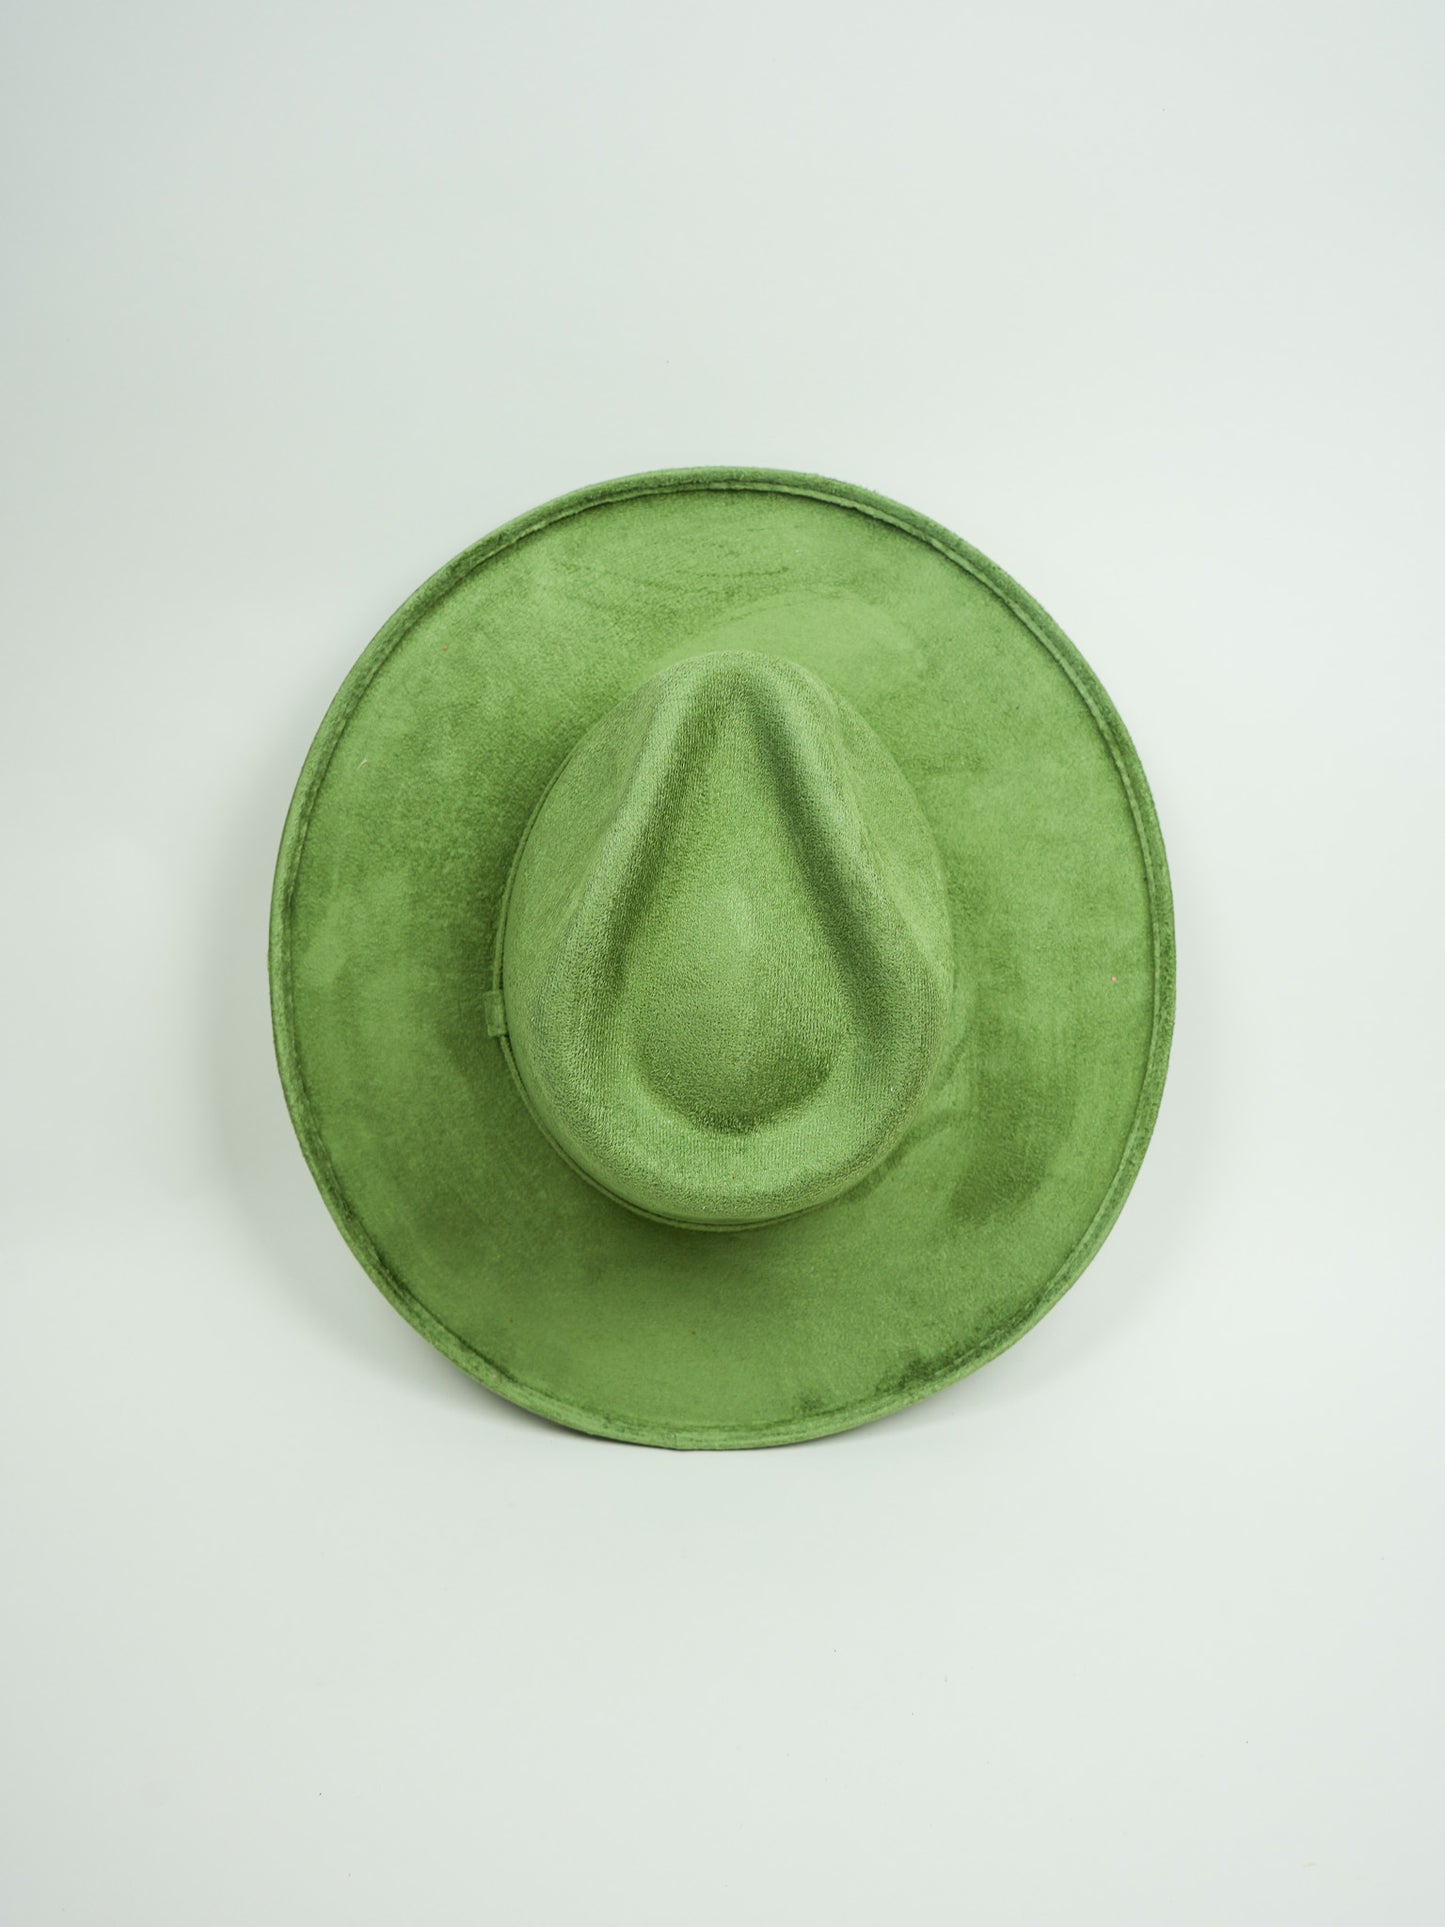 Vegan Suede Rancher Hat - Pencil Brim - Avocado Green